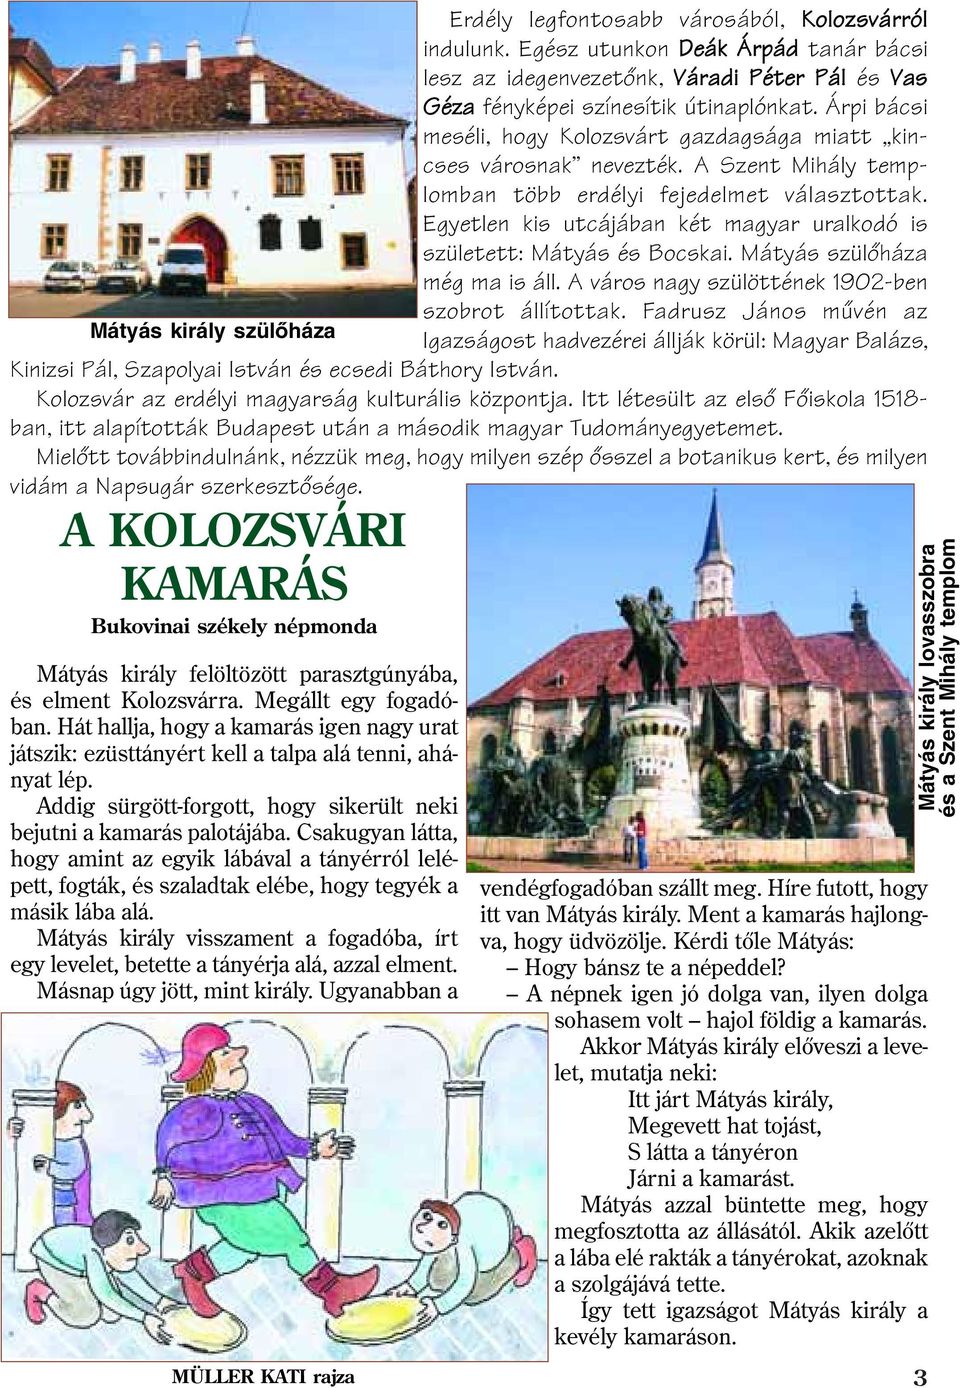 Árpi bácsi meséli, hogy Kolozsvárt gazdagsága miatt kincses városnak nevezték. A Szent Mihály templomban több erdélyi fejedelmet választottak.